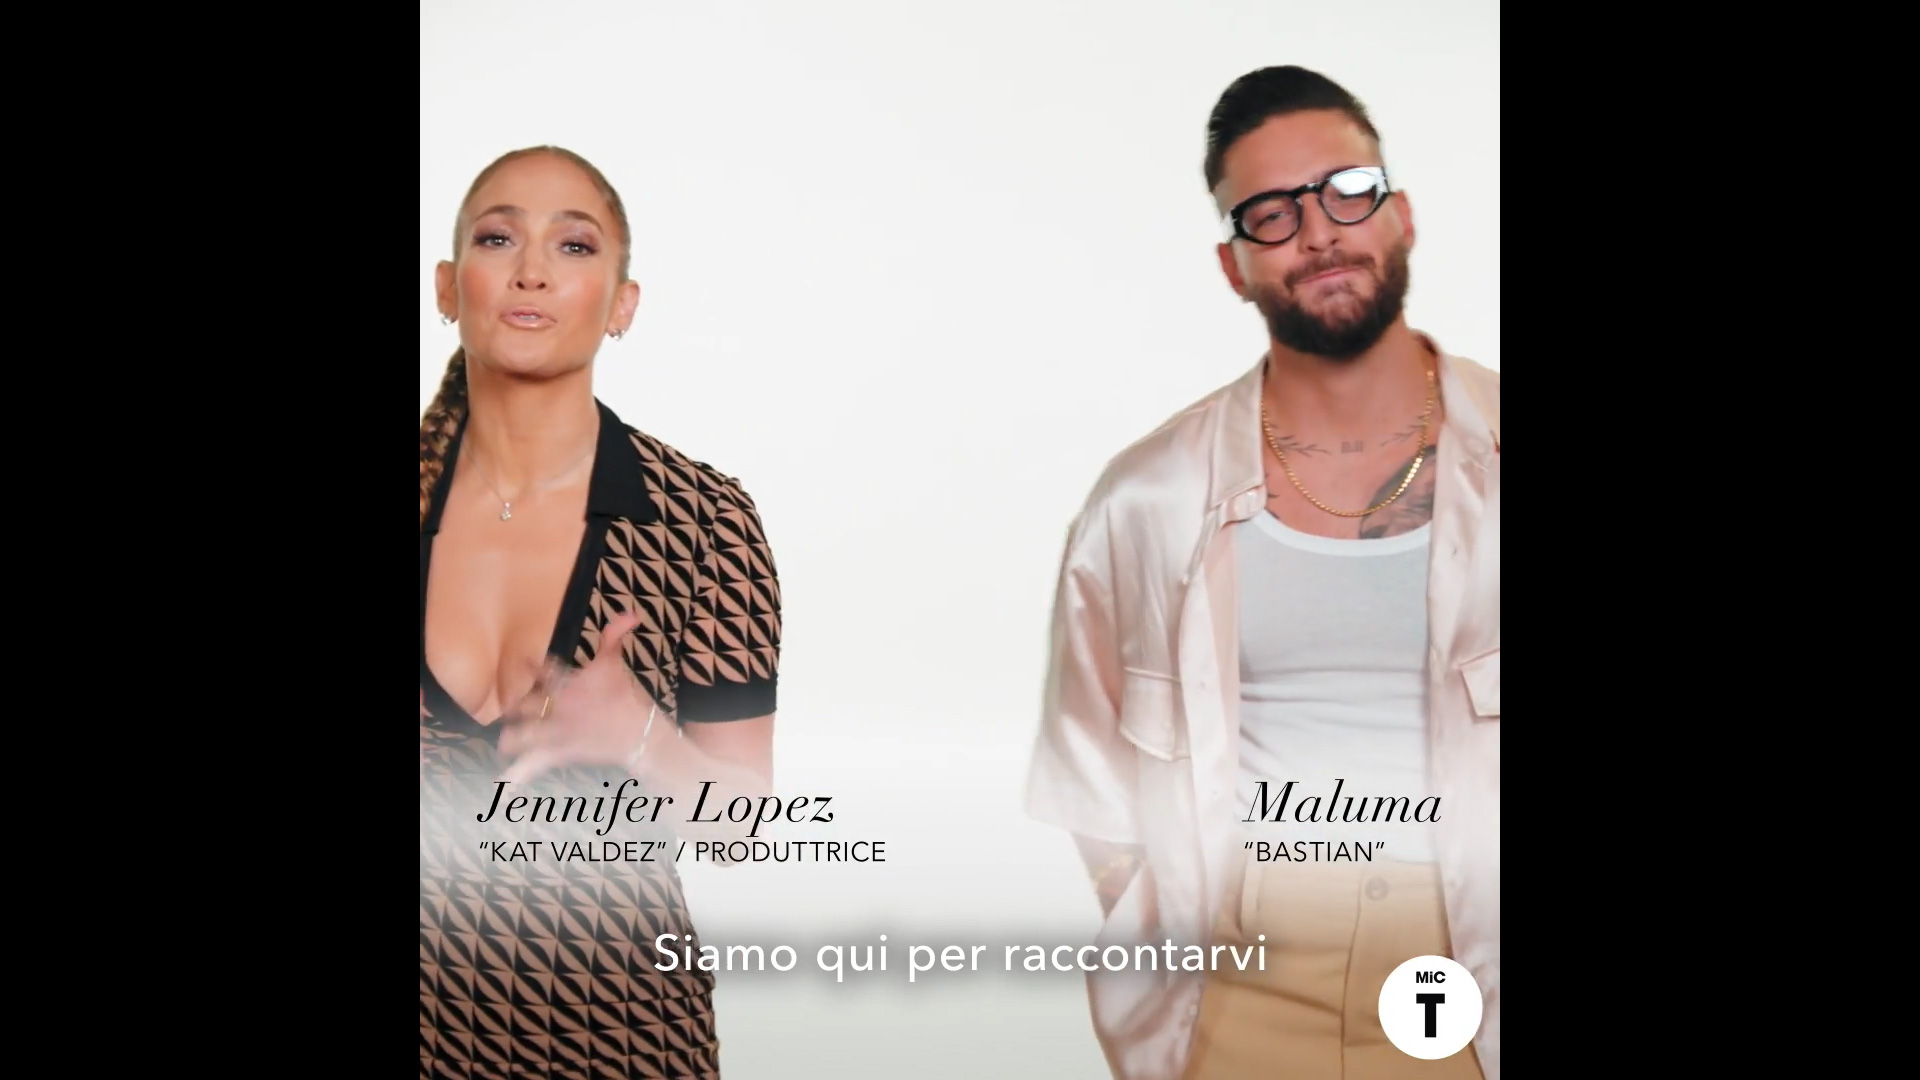 Marry Me - Sposami: Jennifer Lopez e Maluma raccontano il film in 60 secondi